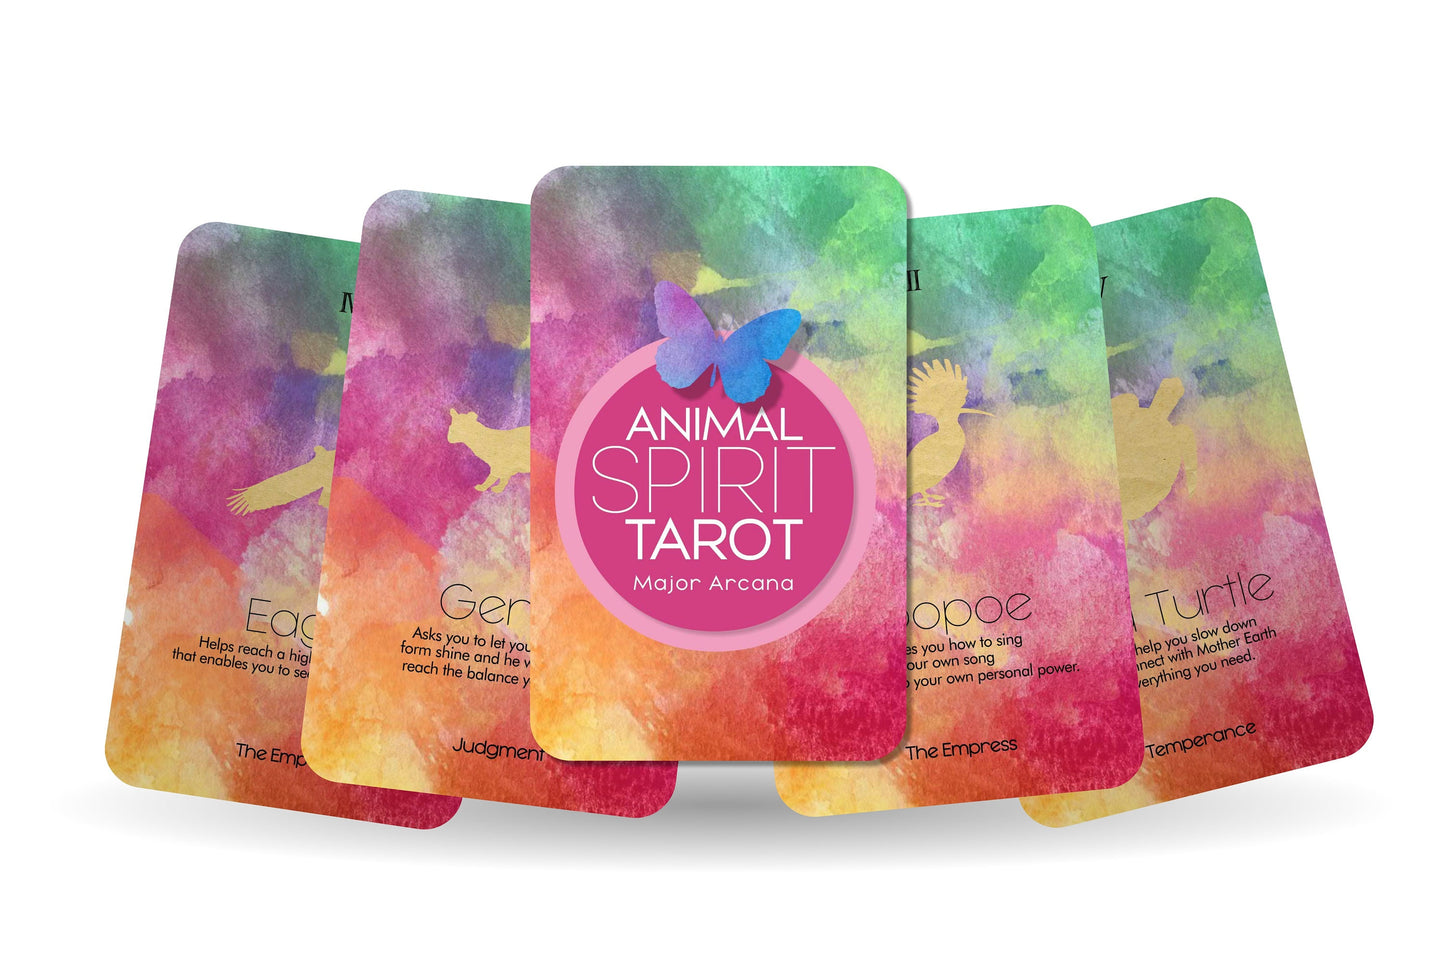 Personalized Tarot - Animal Spirit Tarot  - Major Arcana Tarot Cards